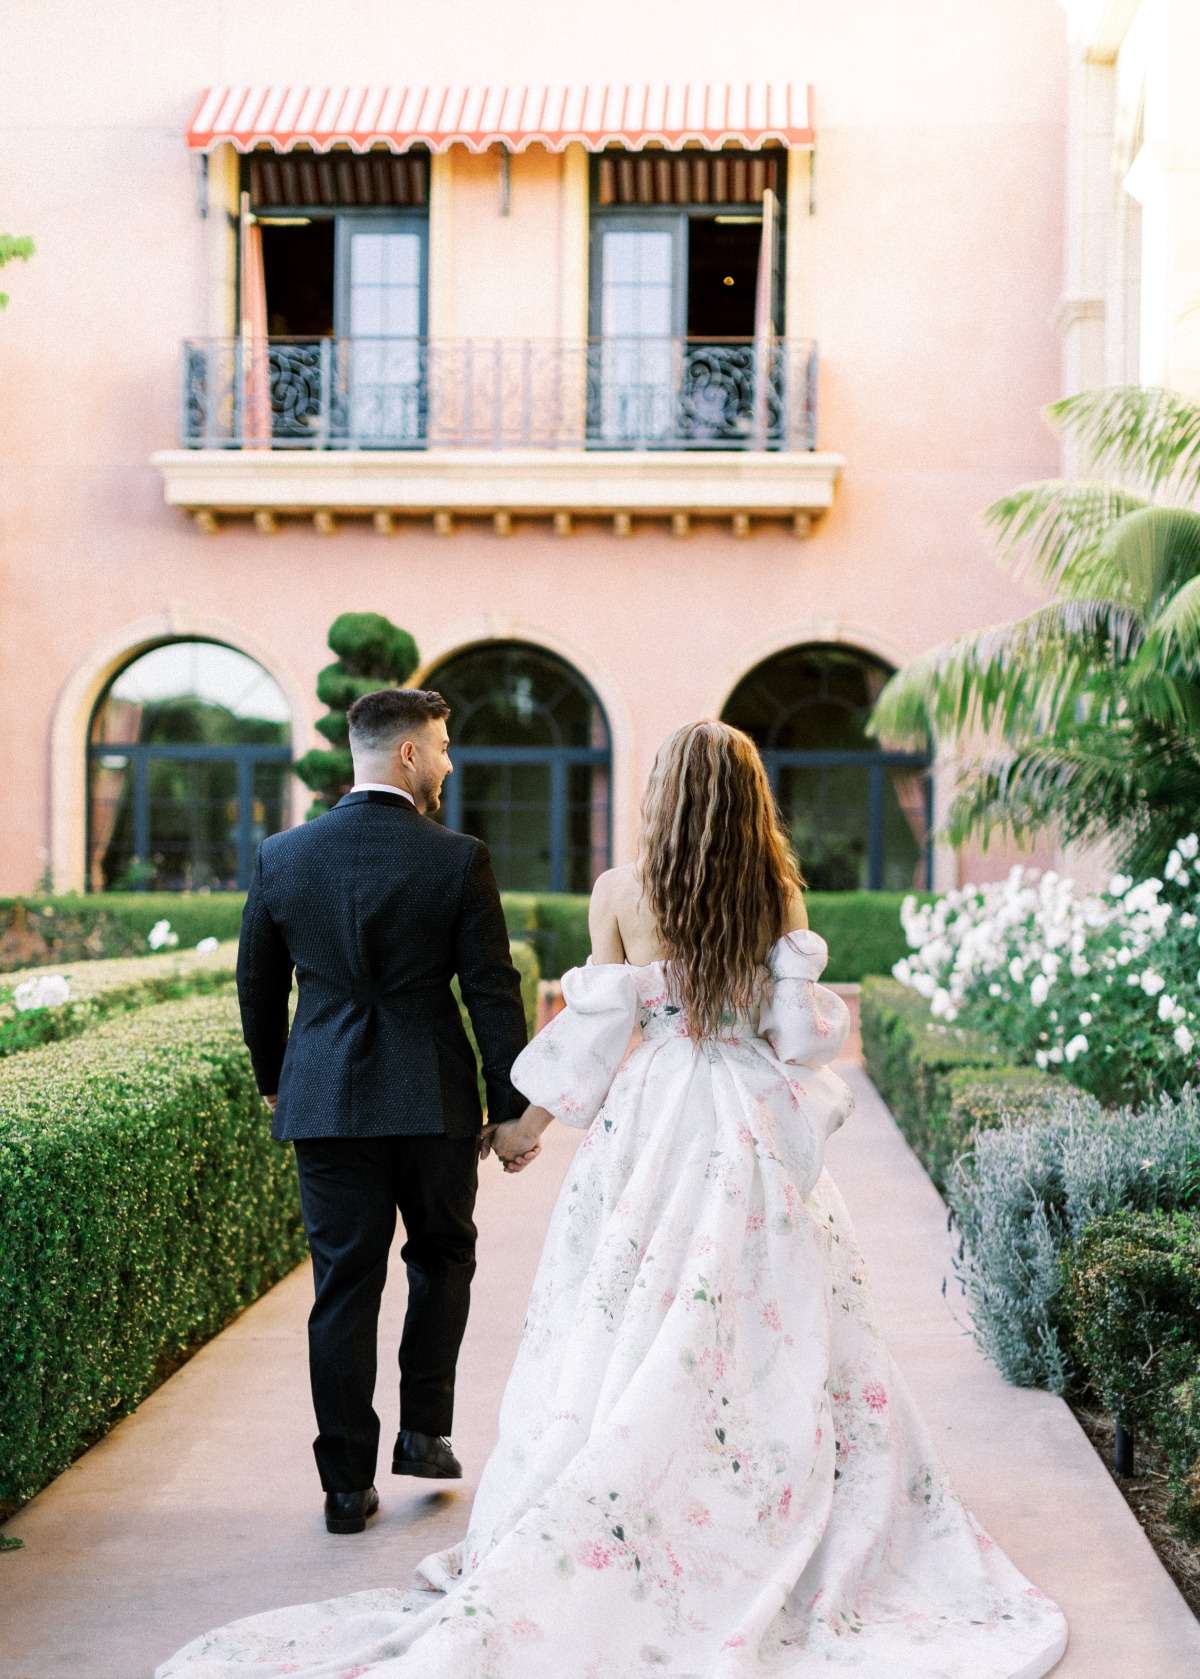 Portrait of bride and groom walking away towards villa